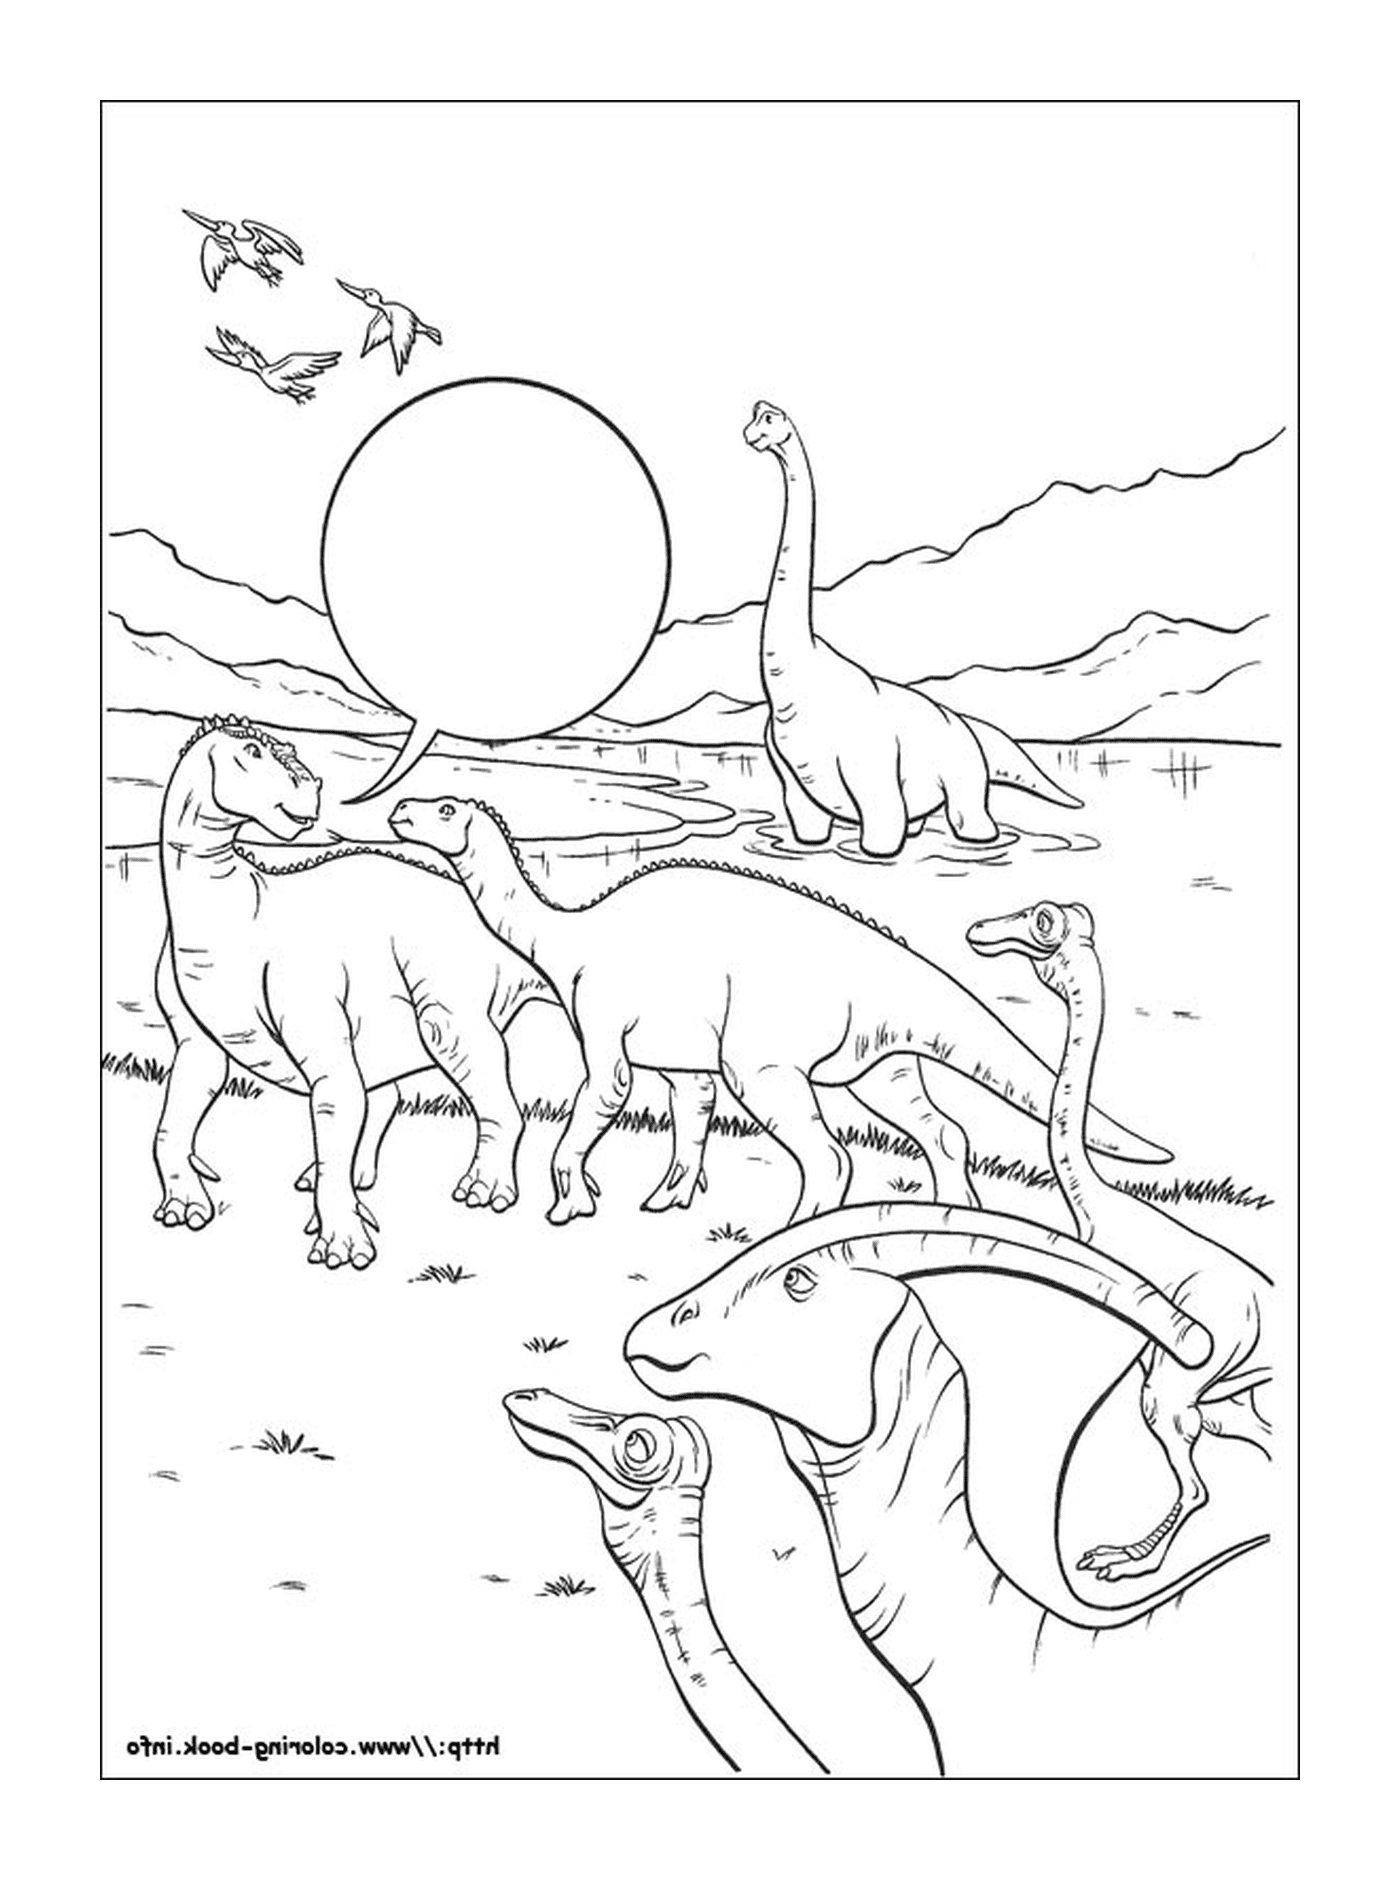  Muitos dinossauros visíveis nesta imagem 